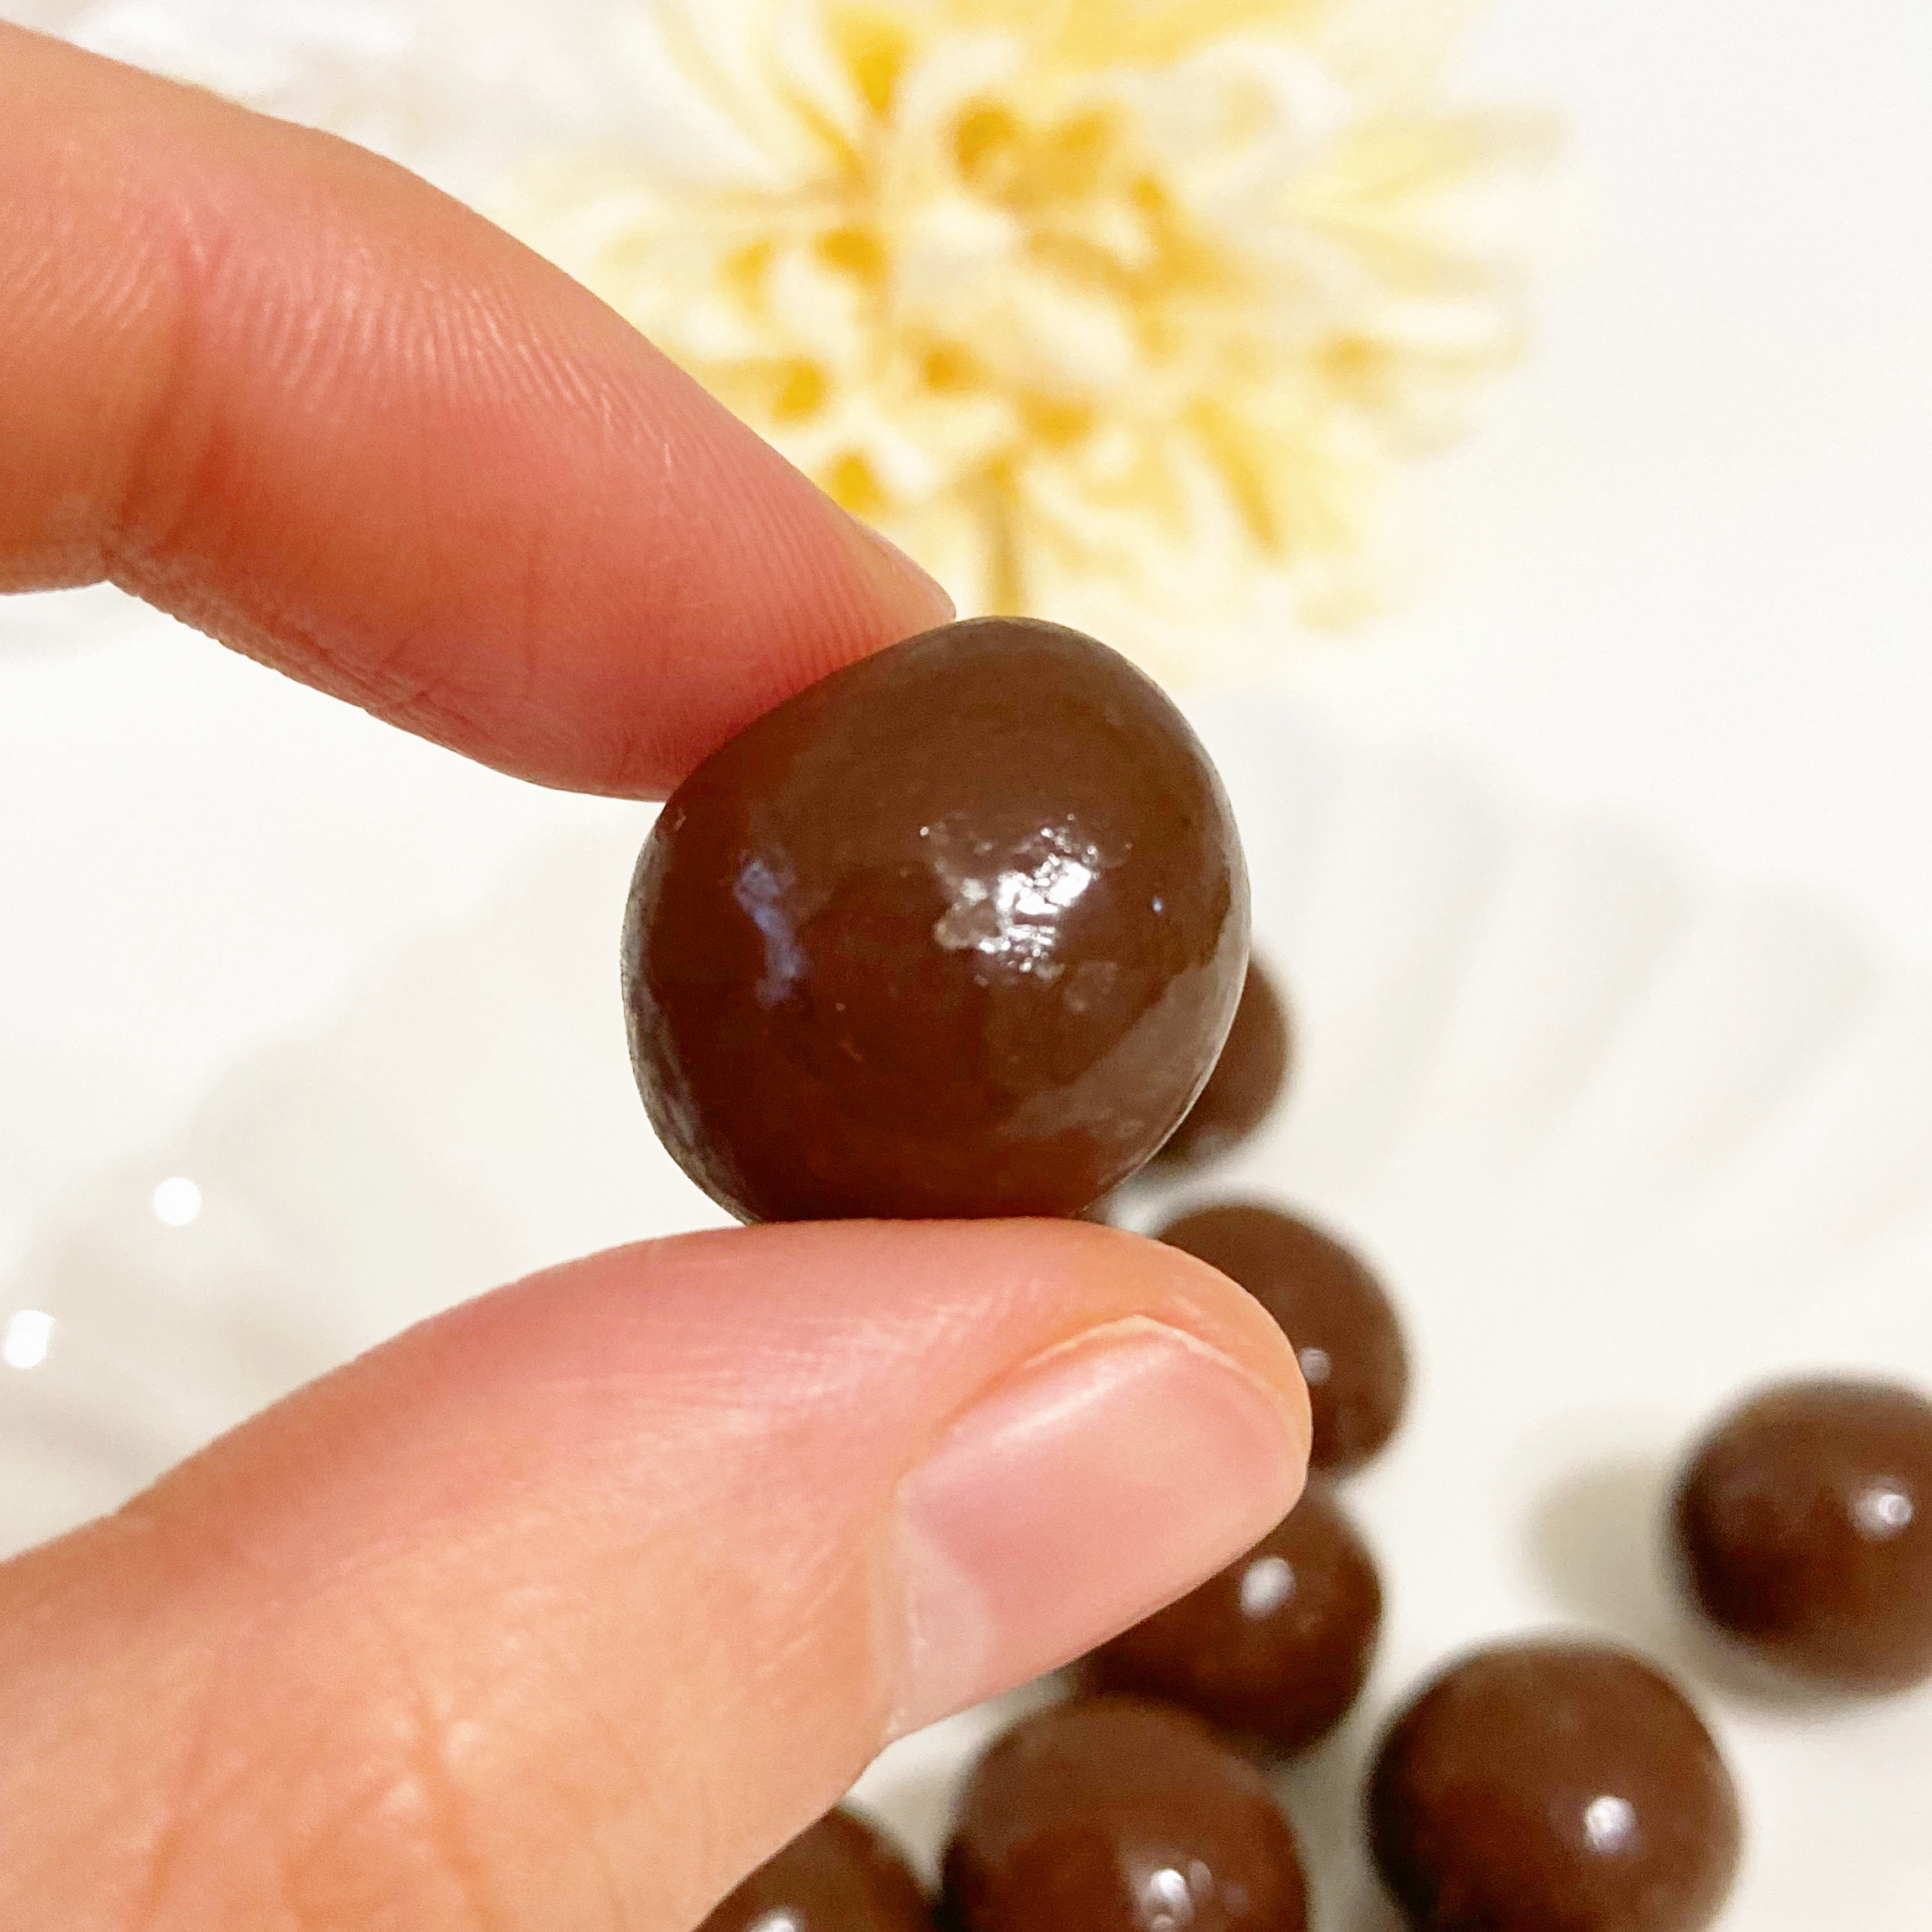 DAISO（ダイソー）のおすすめチョコ「グミinチョコ いちごグミ＆ミルクチョコレート」と「グミinチョコ マスカットグミ＆ミルクチョコレート」